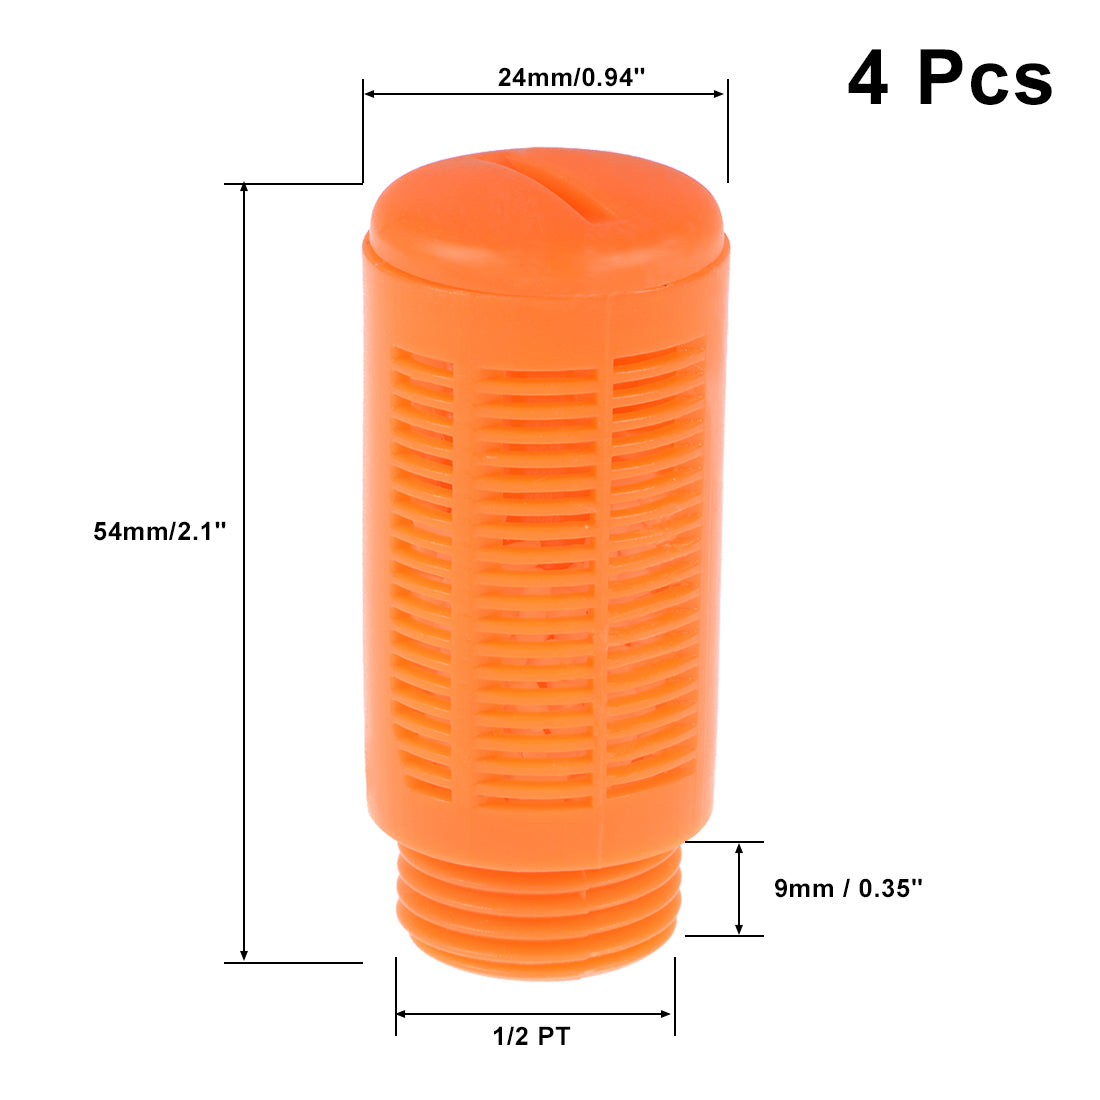 uxcell Uxcell Plastic Pneumatic Muffler Exhaust Air Line Silencer 1/2 PT Orange, 4pcs